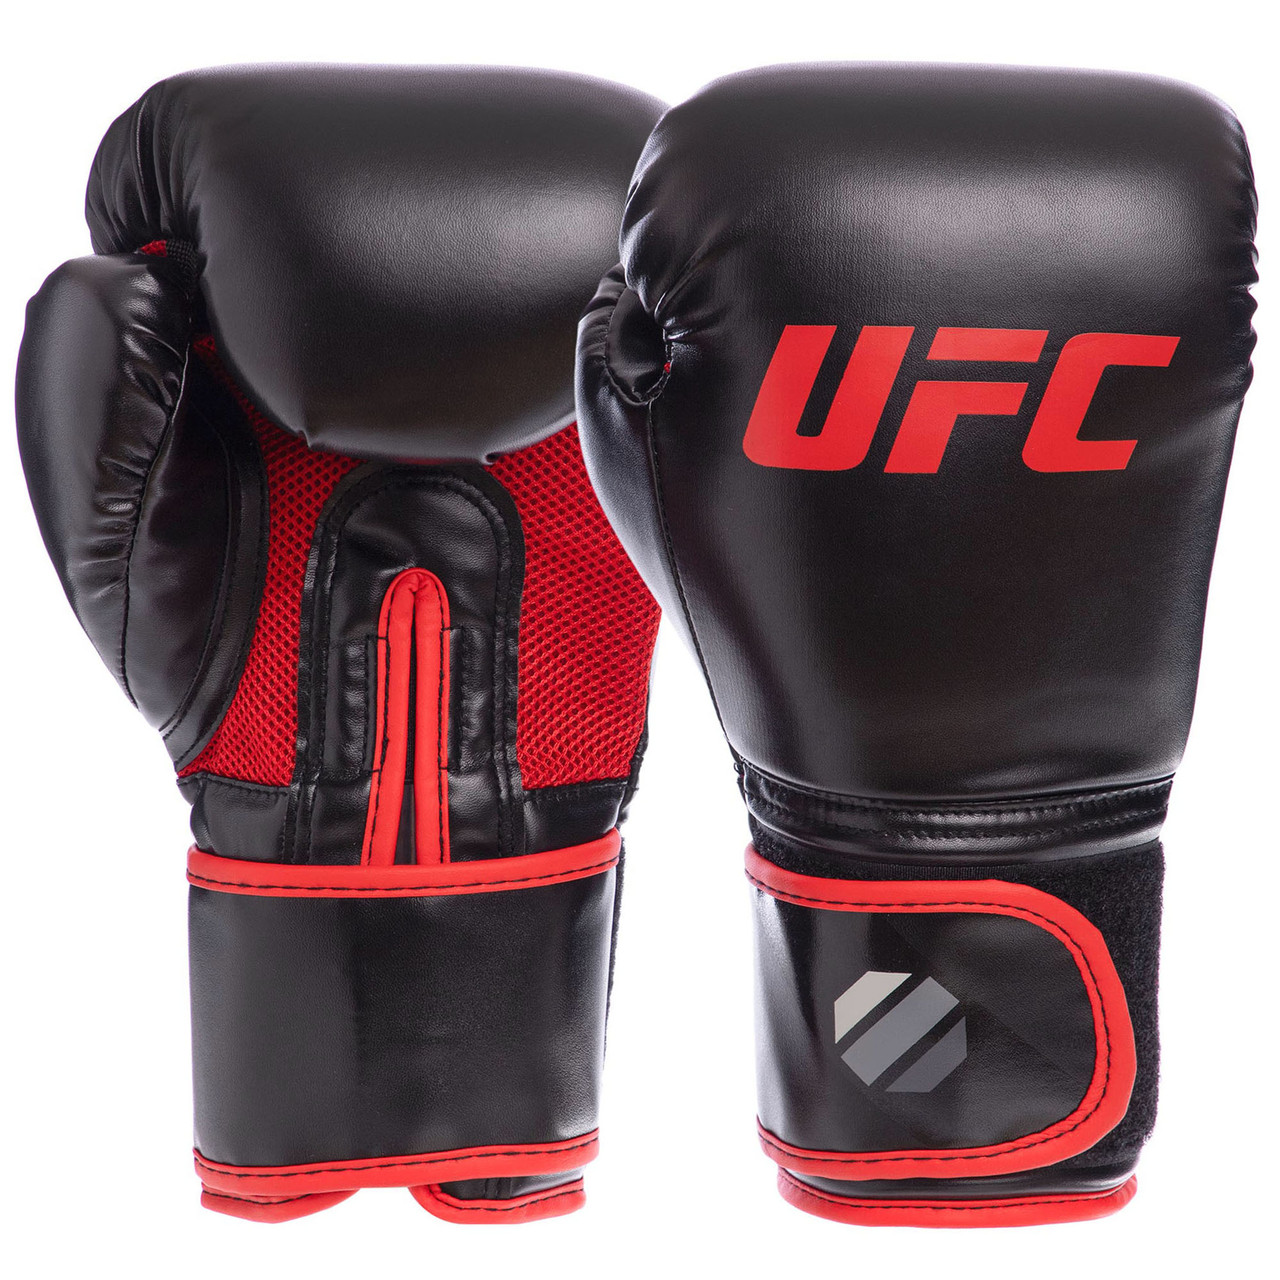 Рукавиці для тайського боксу UFC Myau Thai Style UHK-75125 (розмір 10 унцій)